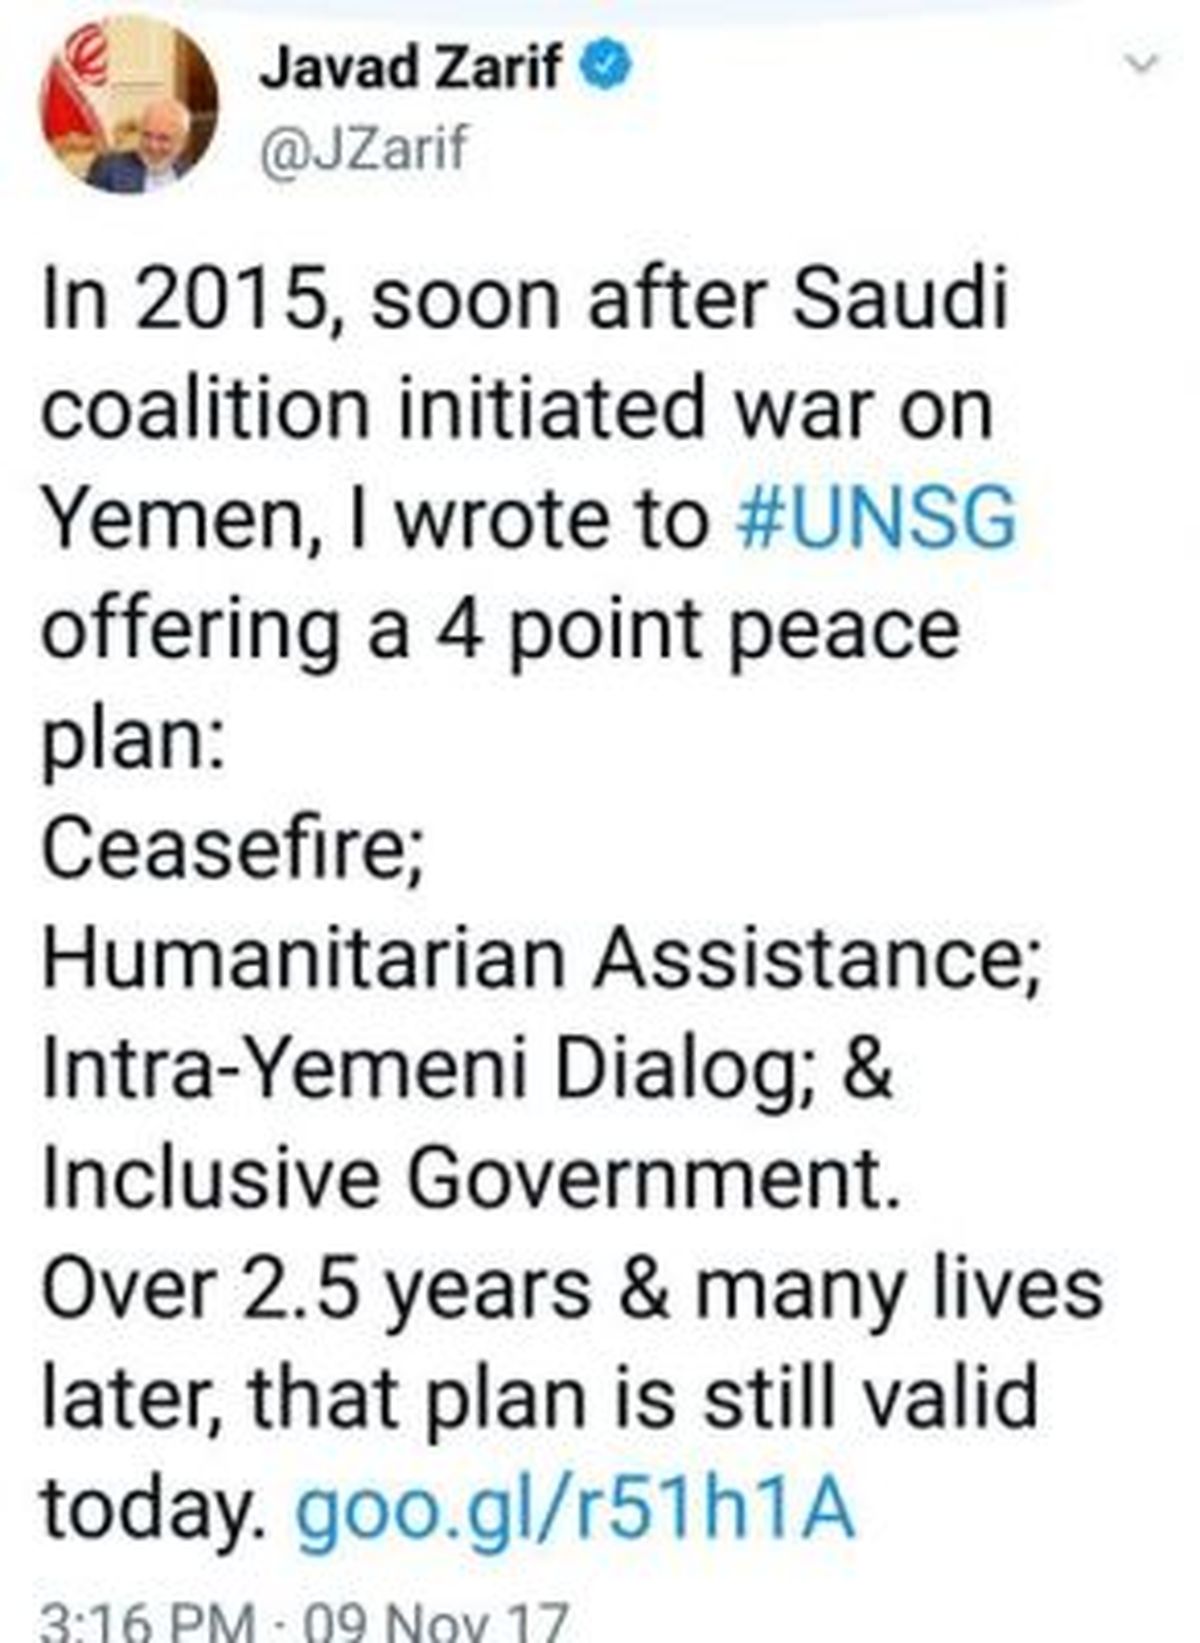 ظریف: طرح صلح ایران برای حل بحران یمن، هنوز معتبر است